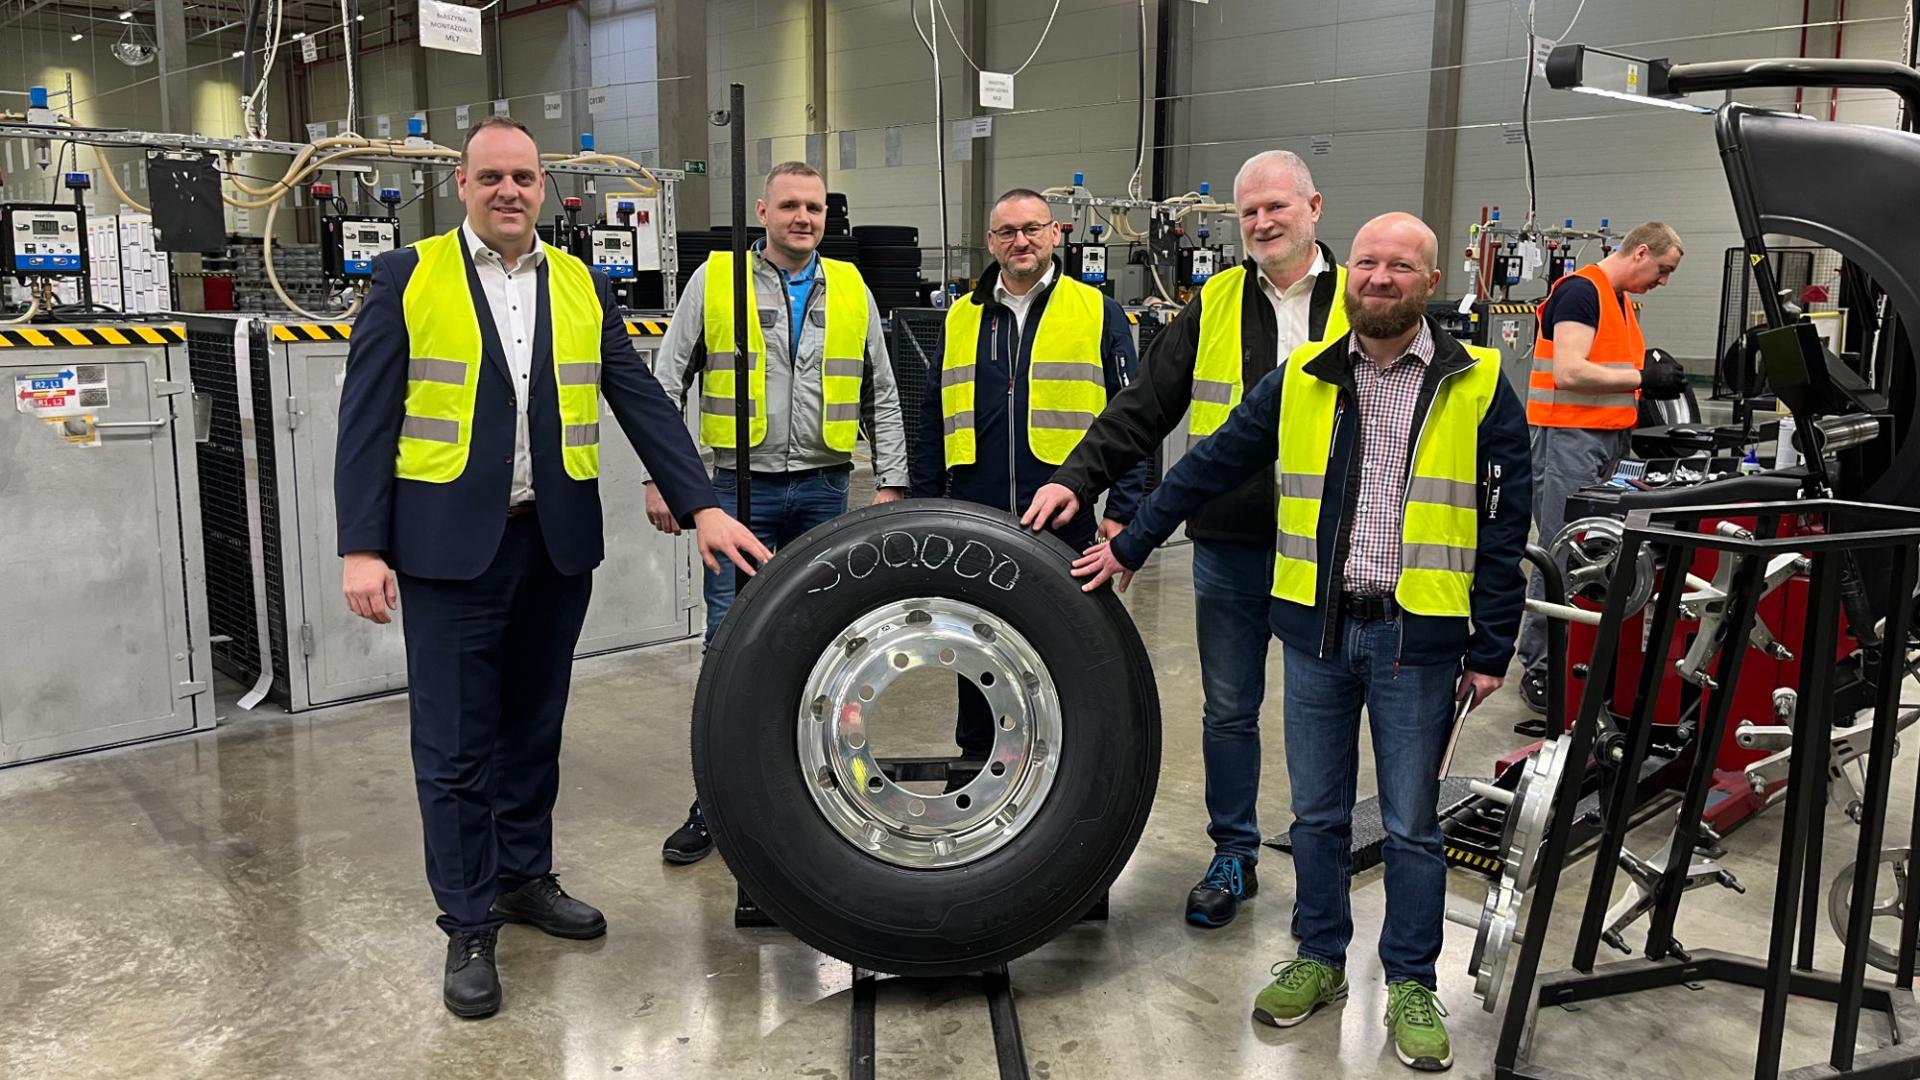 Fünf Männer in Warnwesten stehen in einer Fabrik hinter einem großen Lkw-Rad